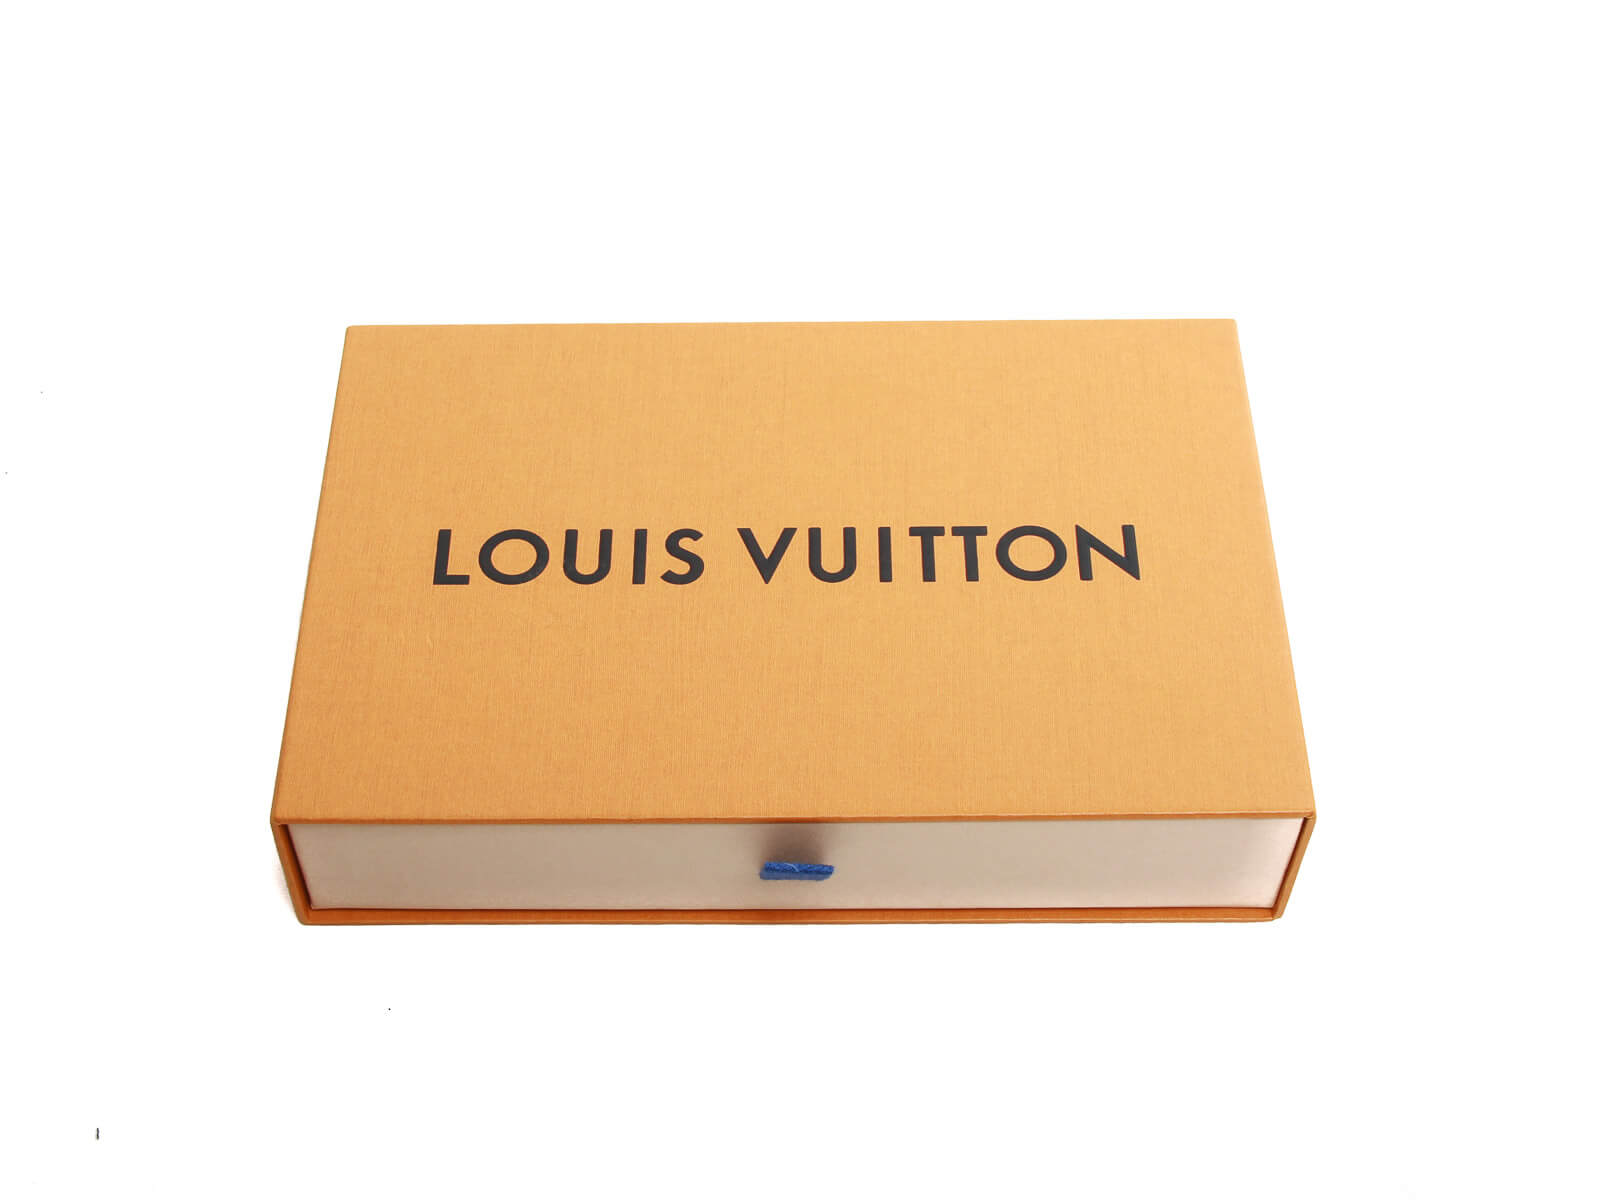 Shop Louis Vuitton PORTEFEUILLE EMILIE Emilie wallet (M62369) by MUTIARA